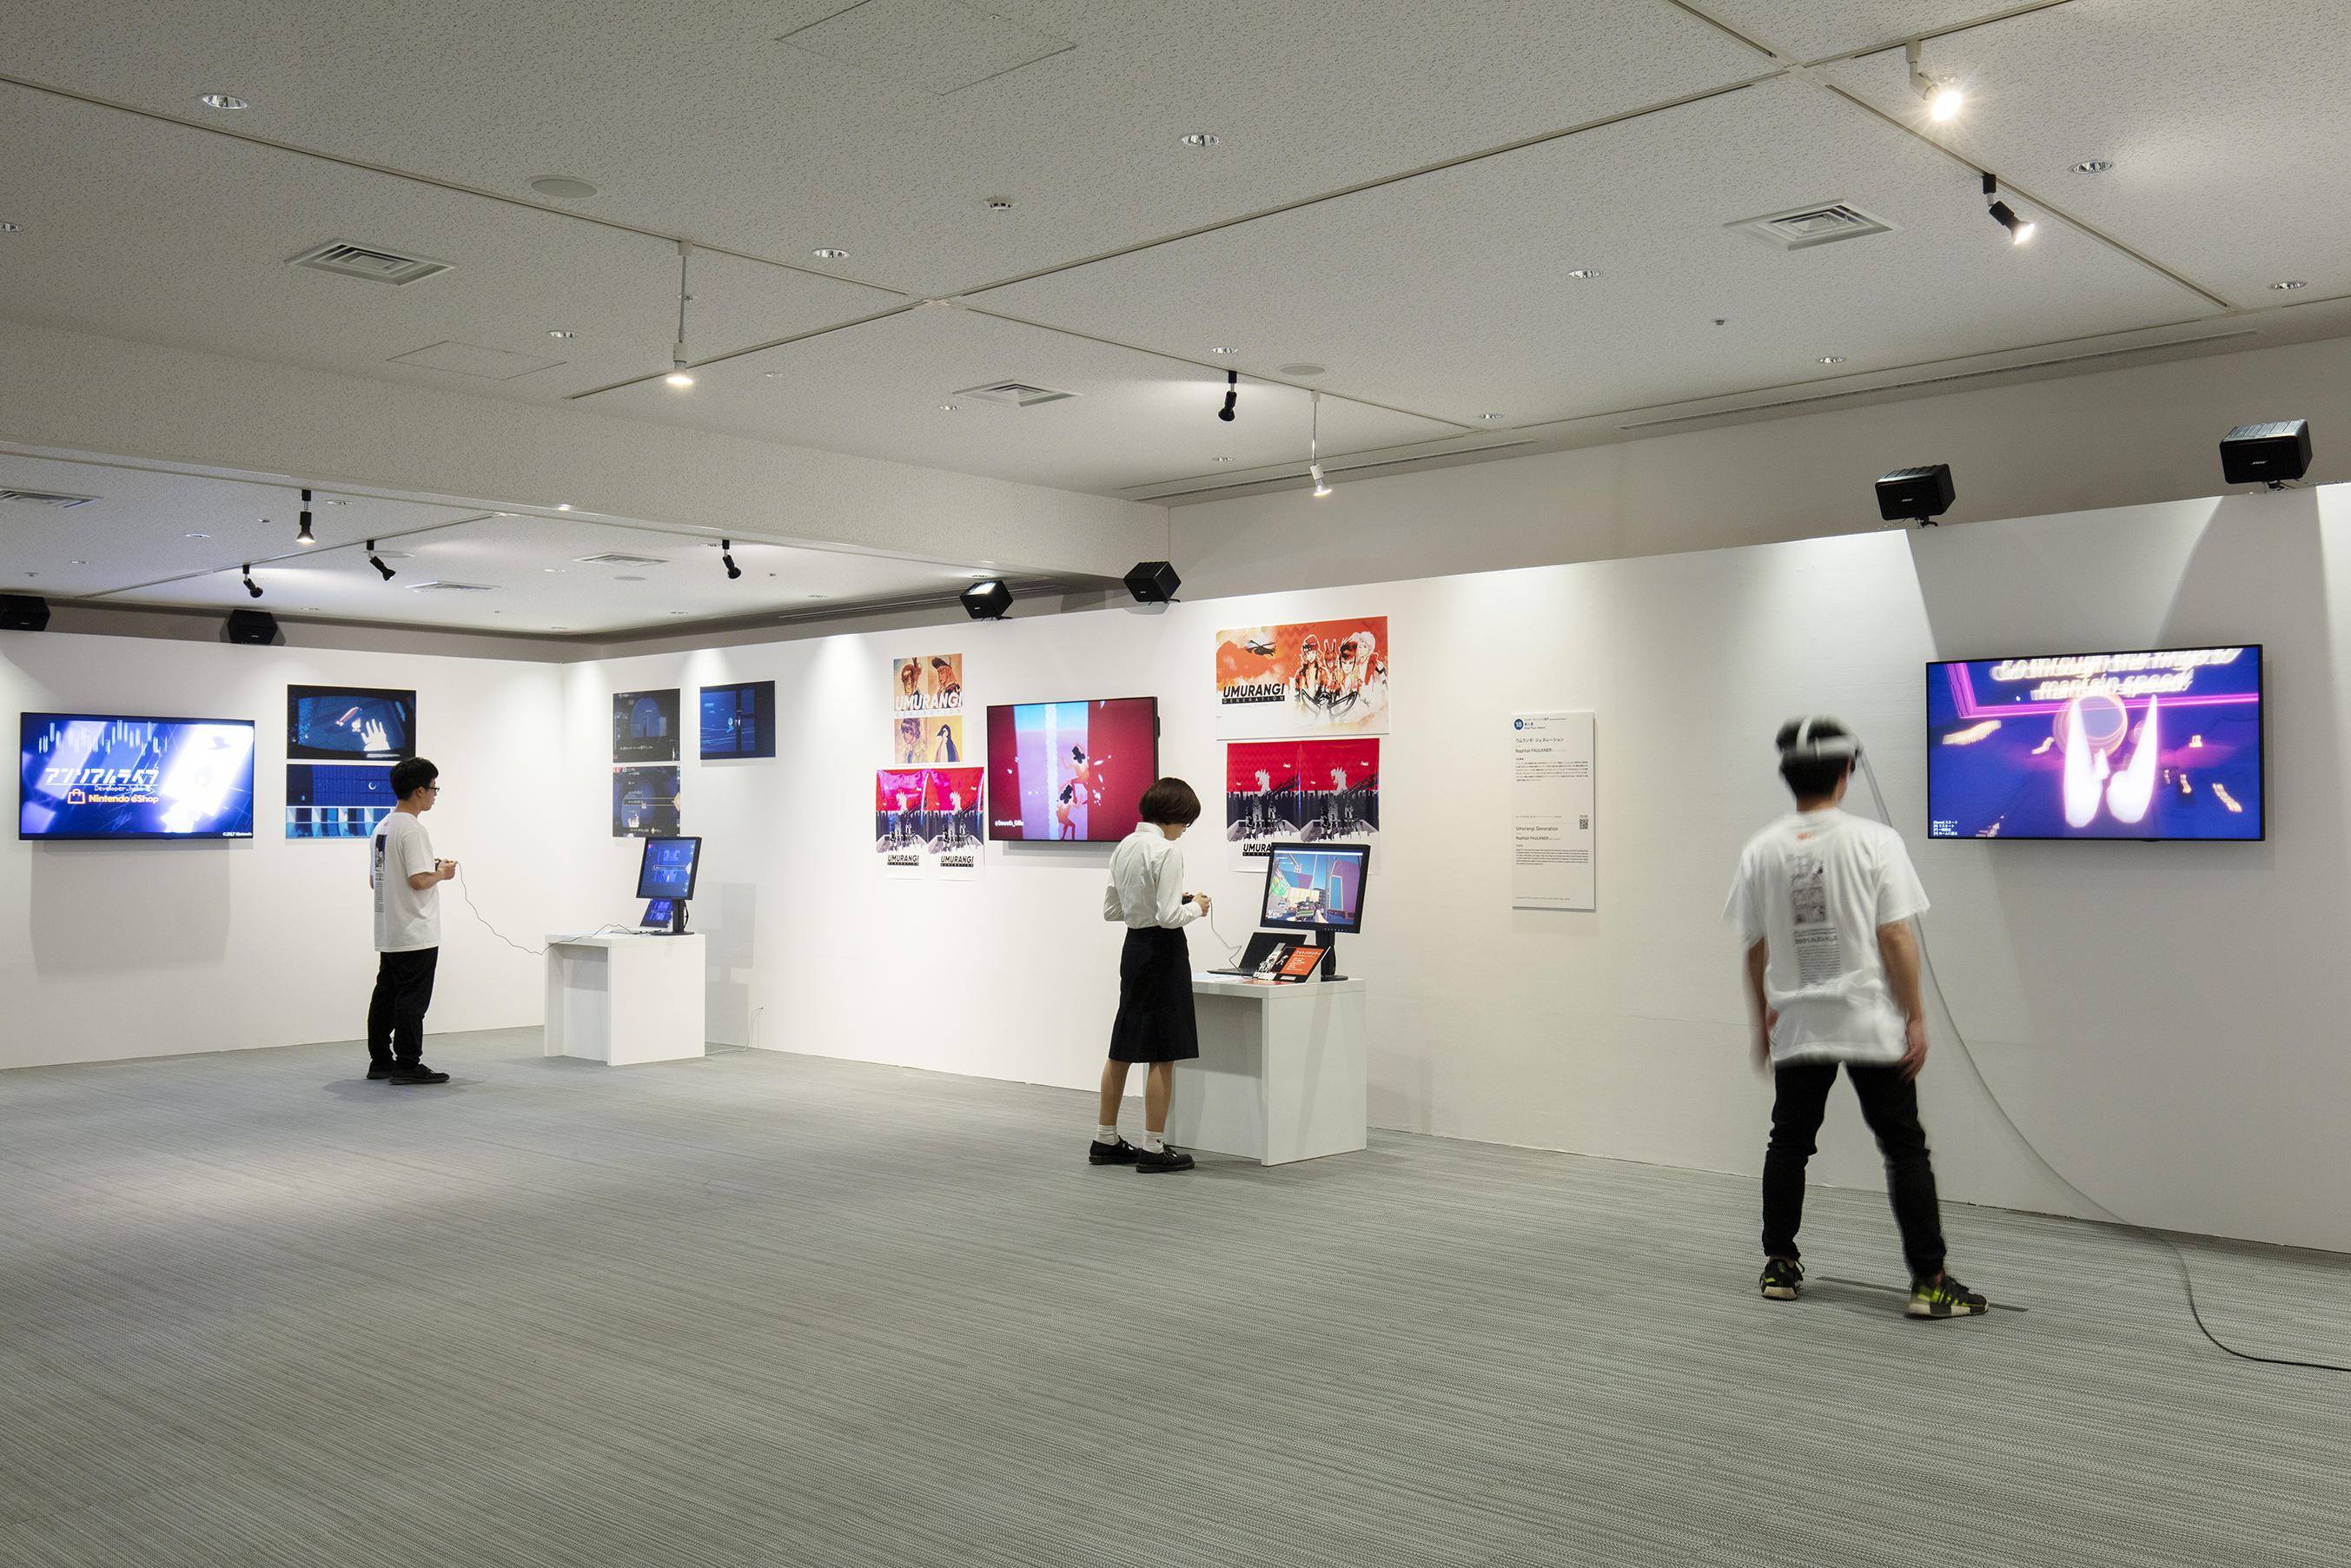 【第24回文化庁メディア芸術祭 受賞作品展】2021年10月3日（日）まで、東京・お台場の⽇本科学未来館を中心に開催中のサブ画像6_エンターテインメント部門を受賞したゲームやVR作品を実際に楽しめるエリアも7Fに設置しています。 （7階のインフォメーションで整理券を配布）Photo：Satoshi Nagare